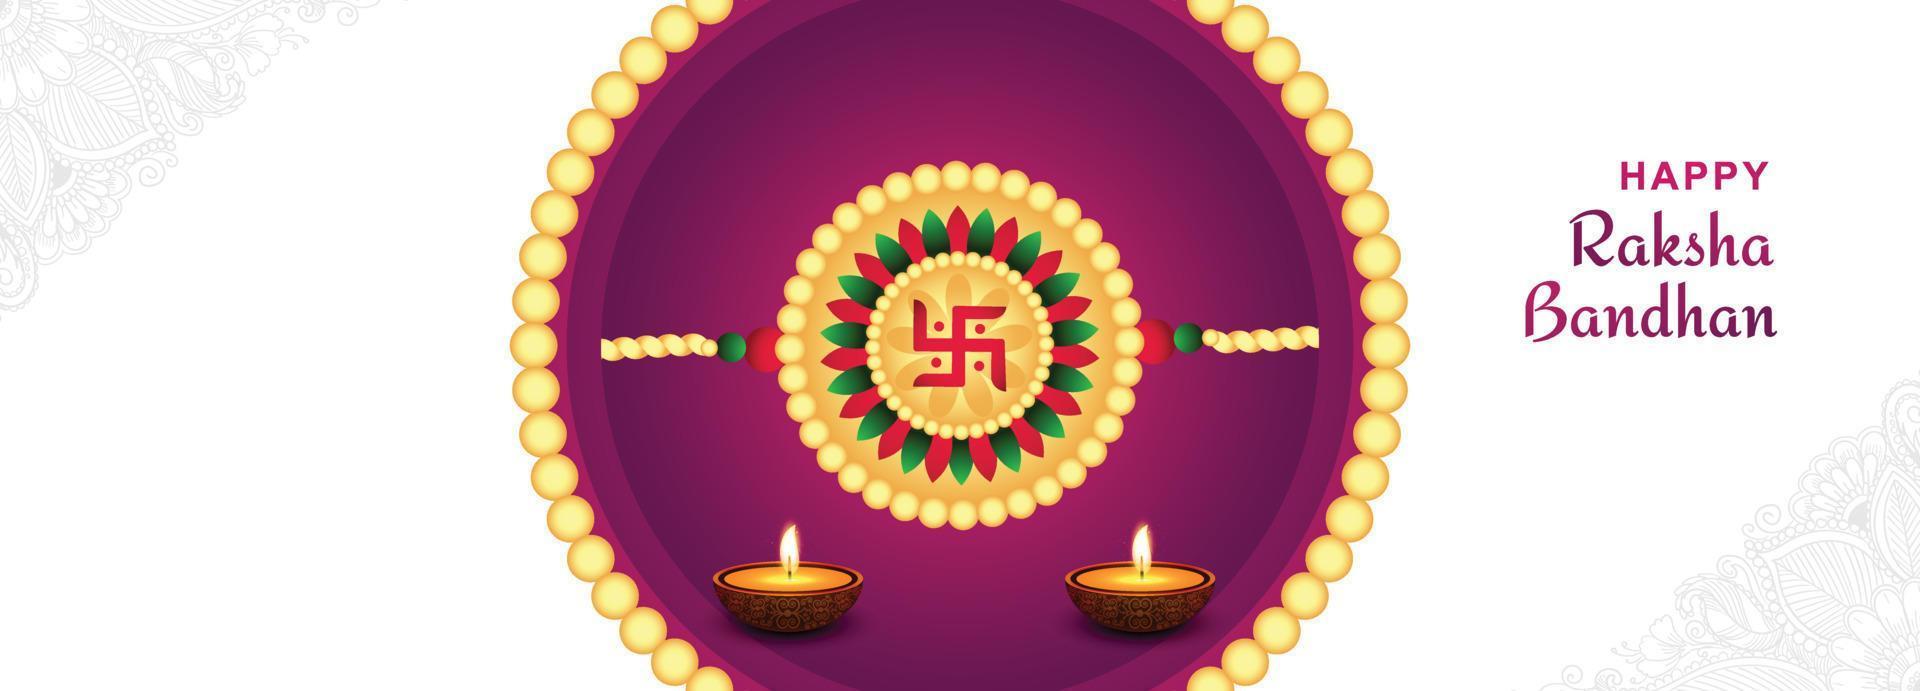 conception de raksha bandhan avec bannière du festival indien rakhi vecteur